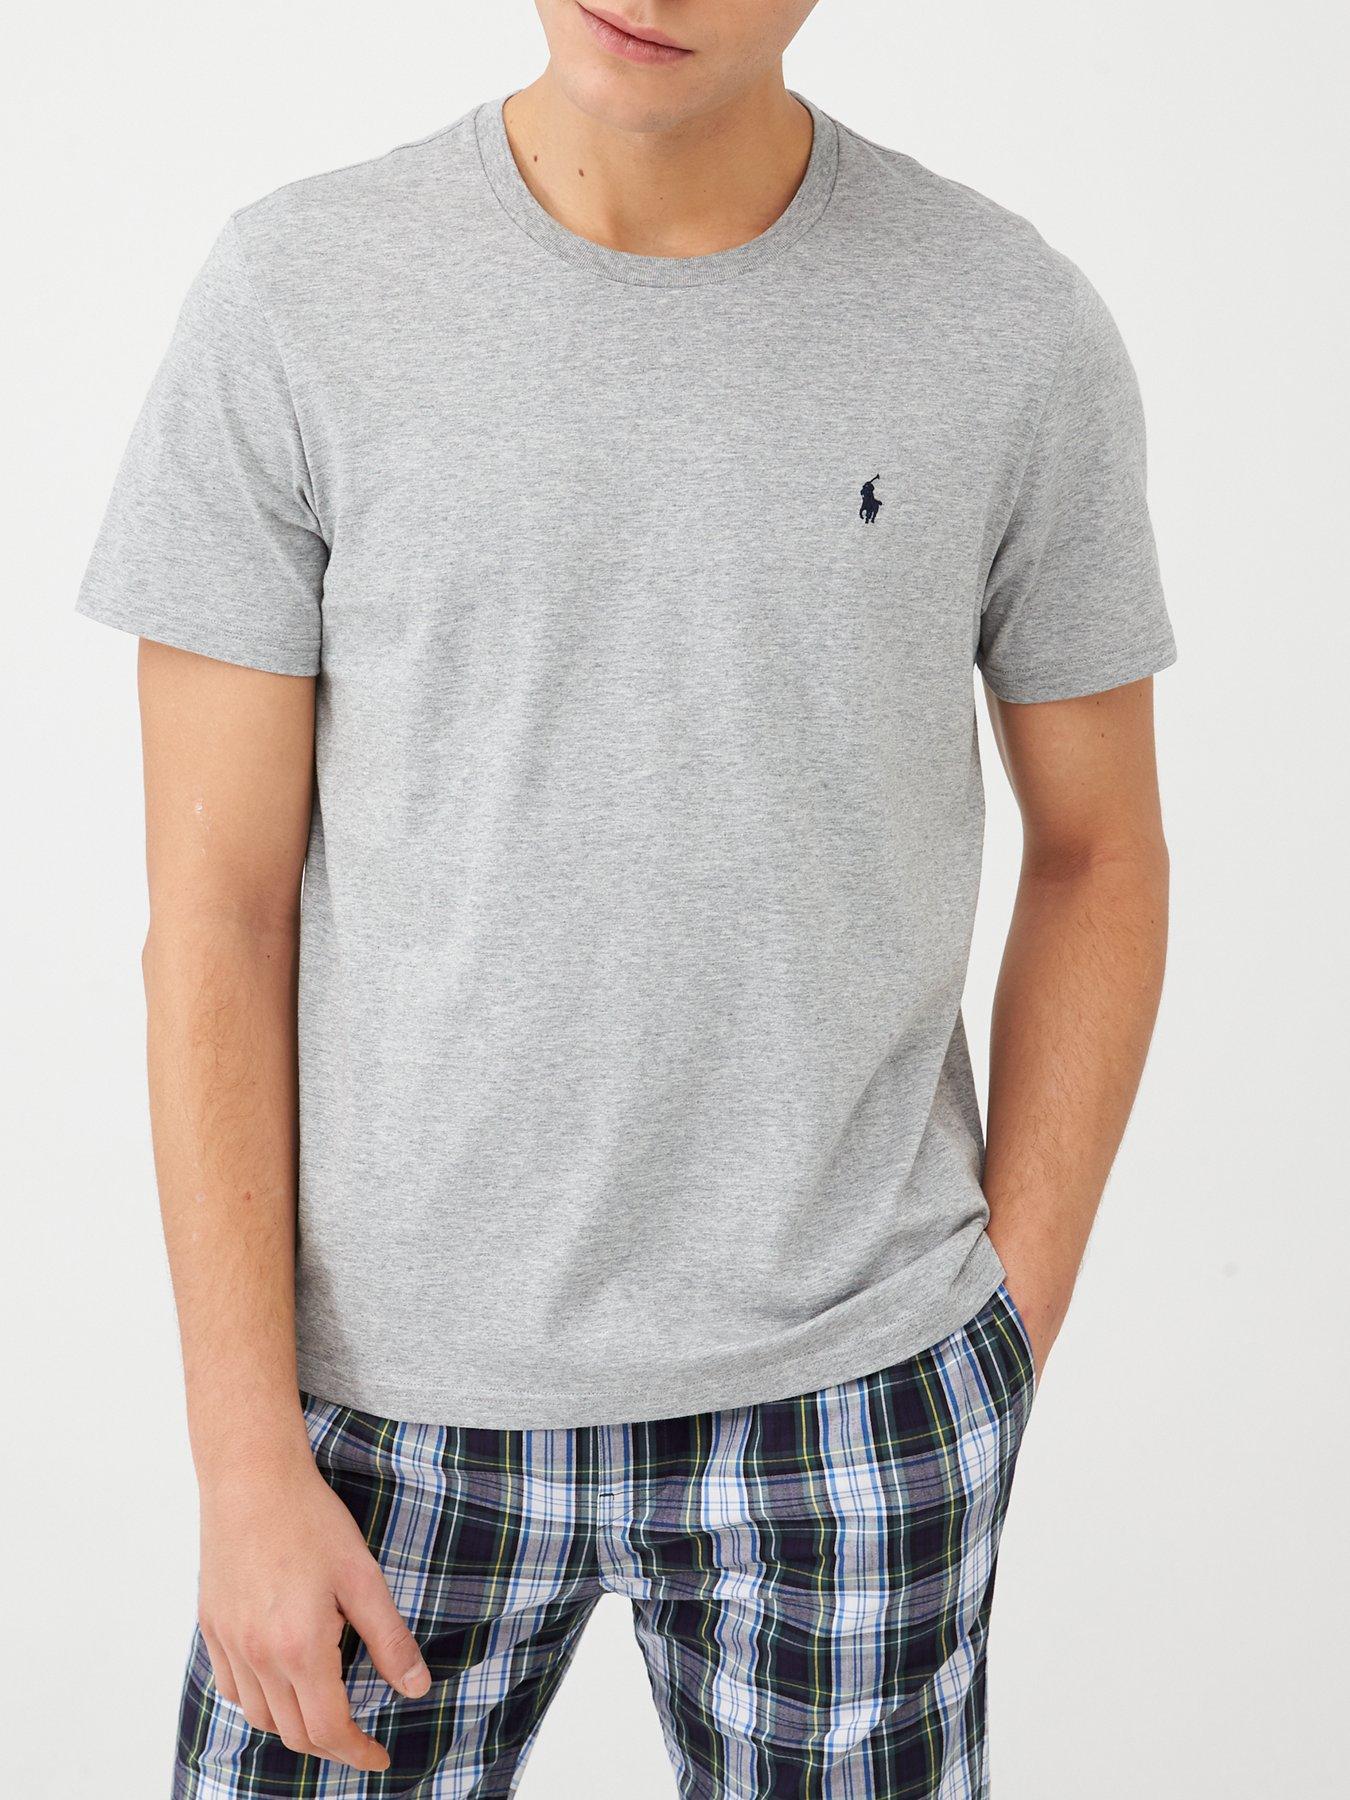 Polo Ralph Lauren T Shirt Deals, 59% OFF | www.txarango.com